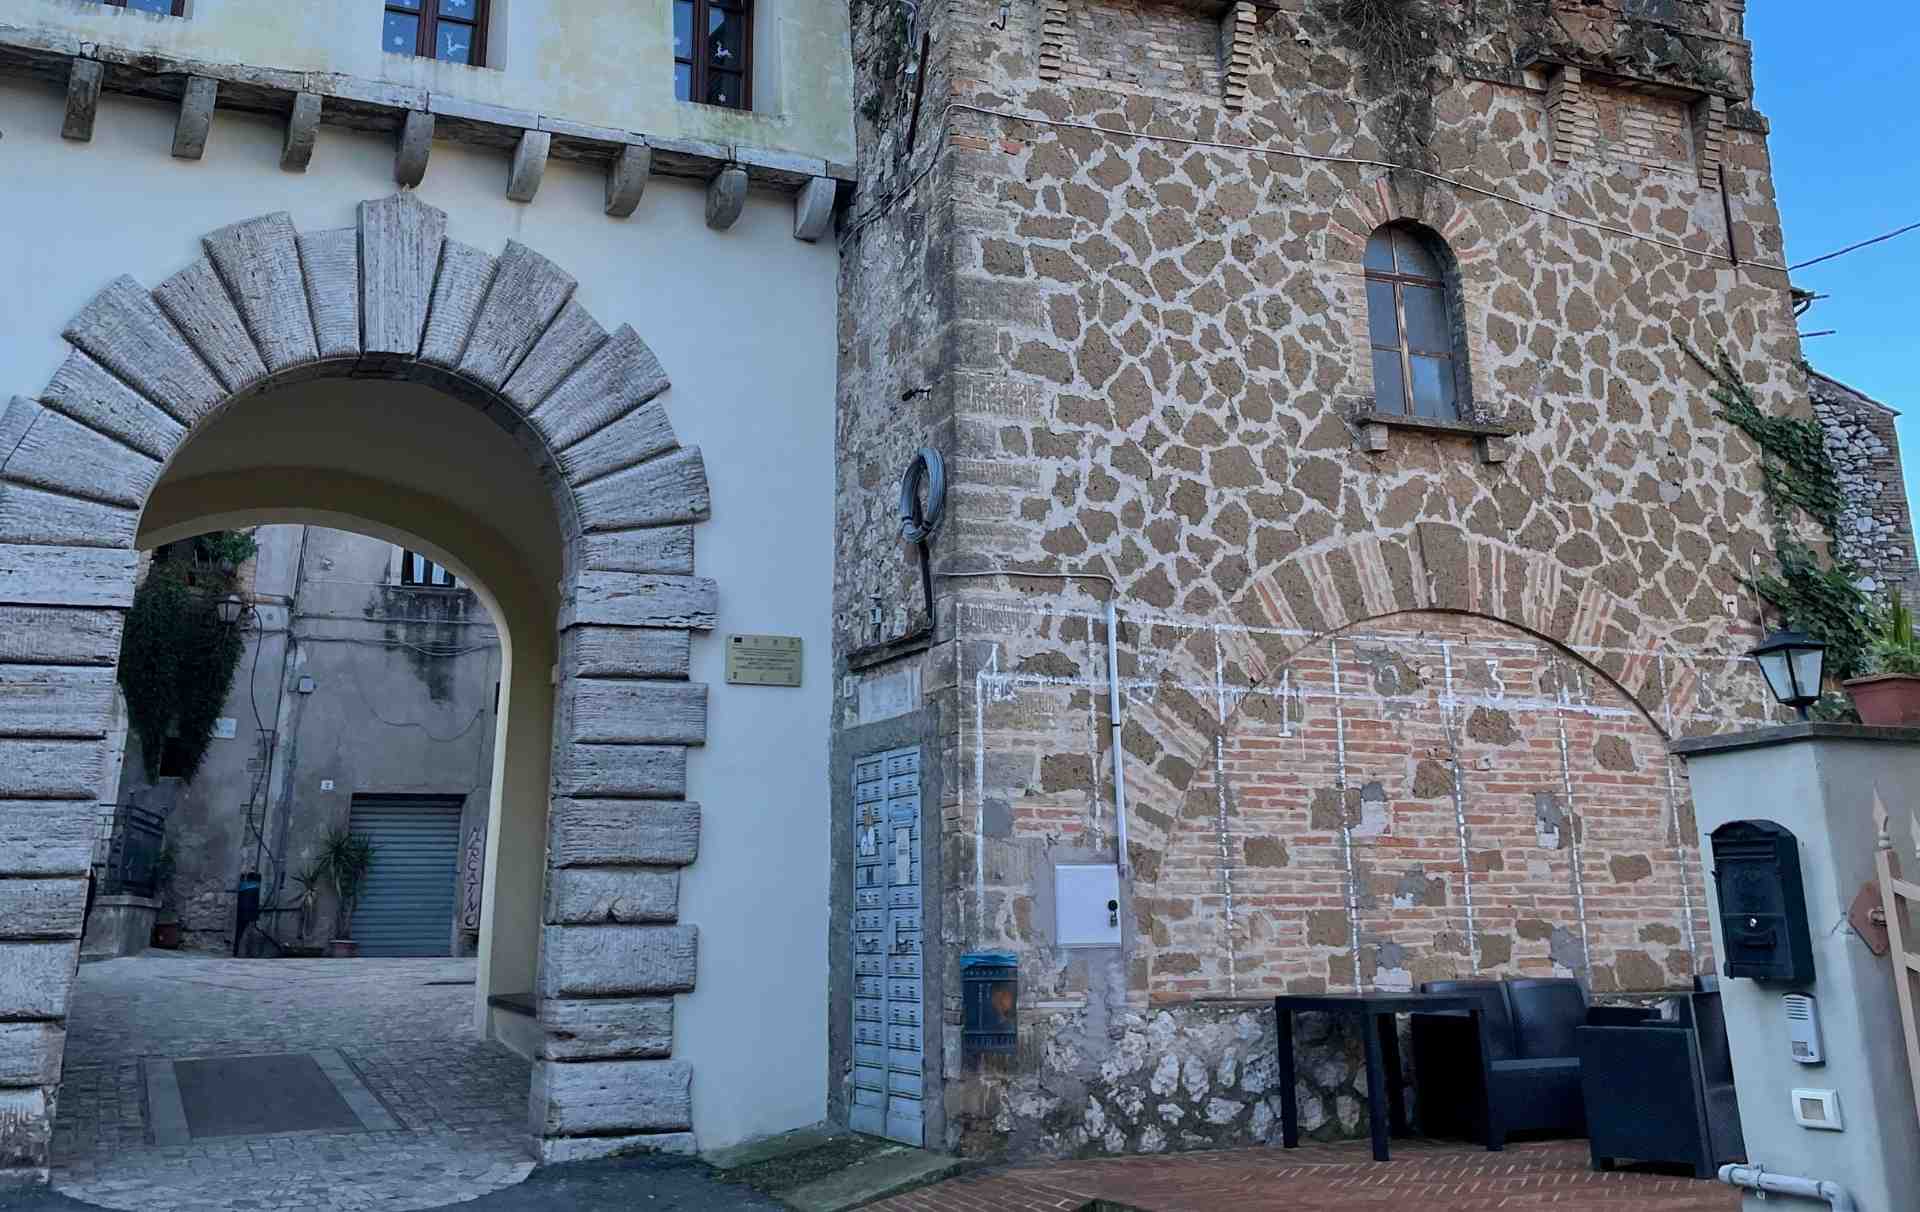 Ingresso nelle mura di Calvi dell'Umbria